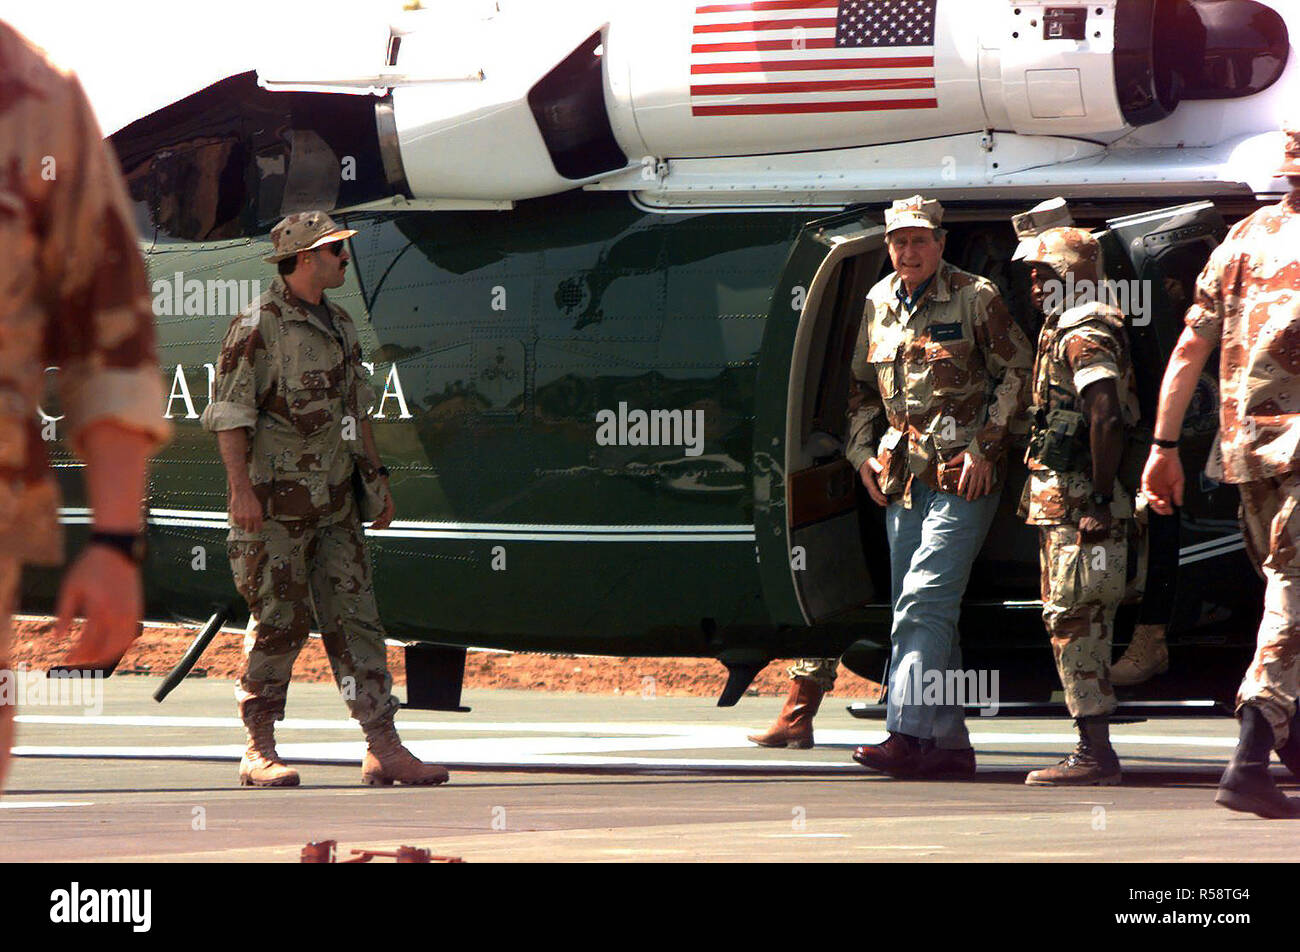 1992 - Präsident George Bush kommt an der Amerikanischen Botschaft auf ein UH-60 Blackhawk Helikopter. Stockfoto